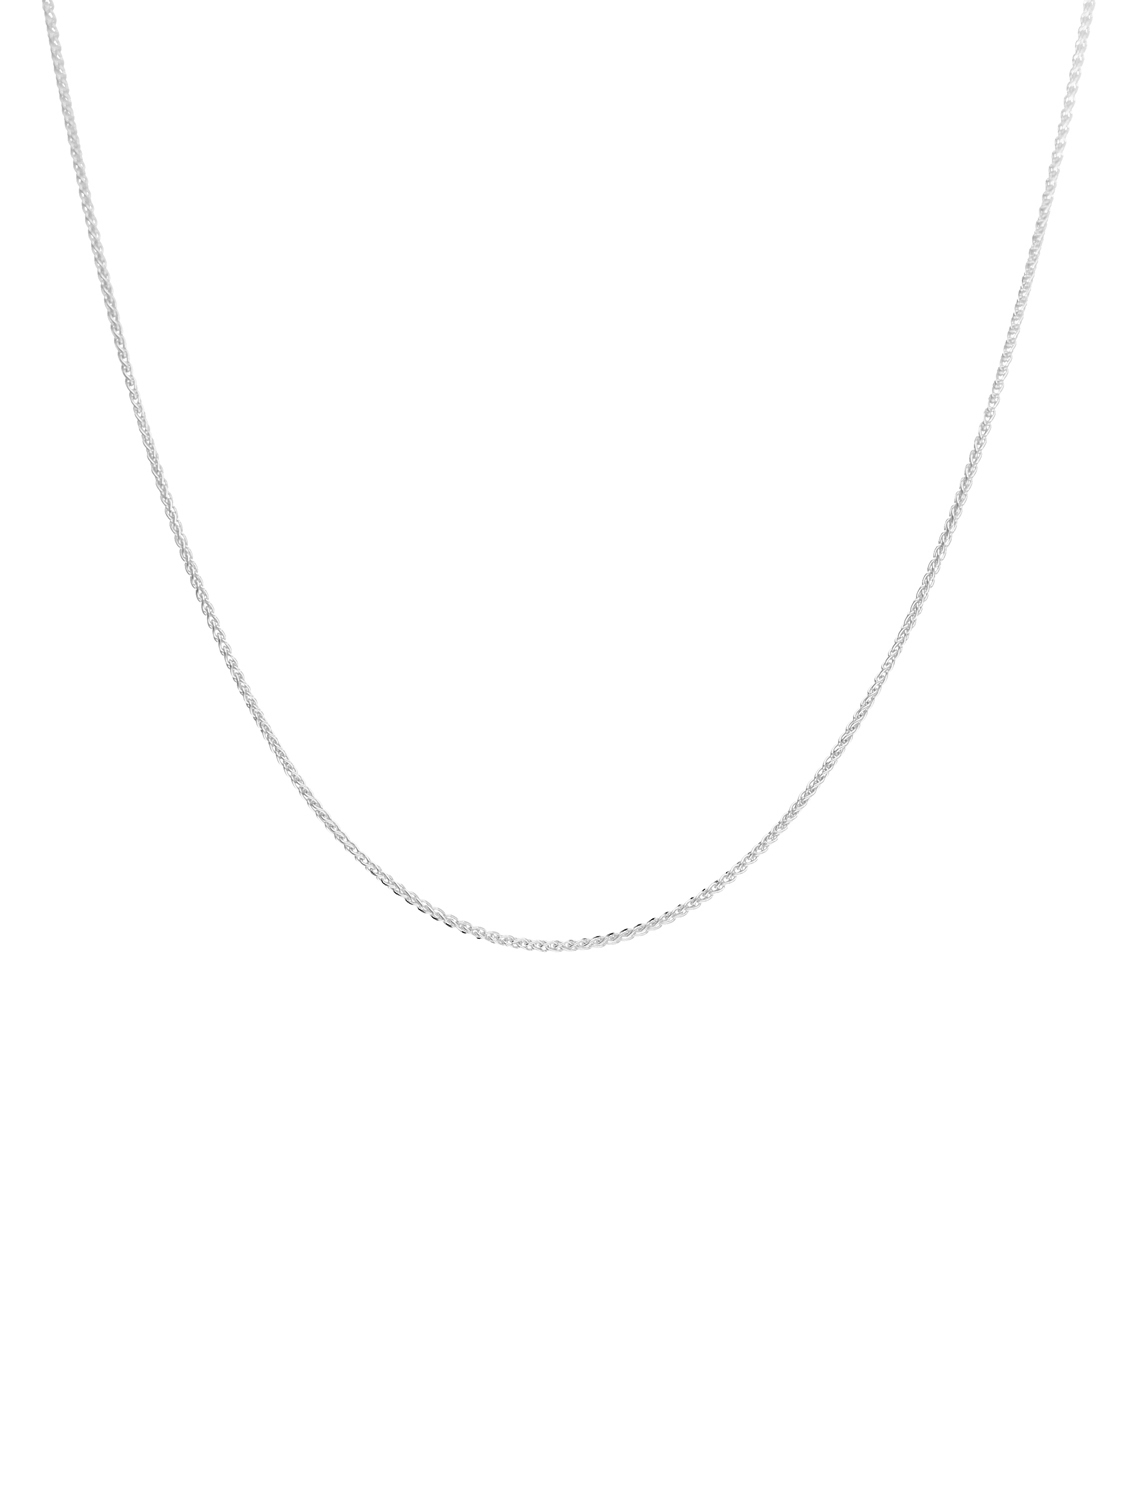 Trixi - Halskette 333 Weißgold Karabiner - Breite 1,1 mm -  Länge 40 cm